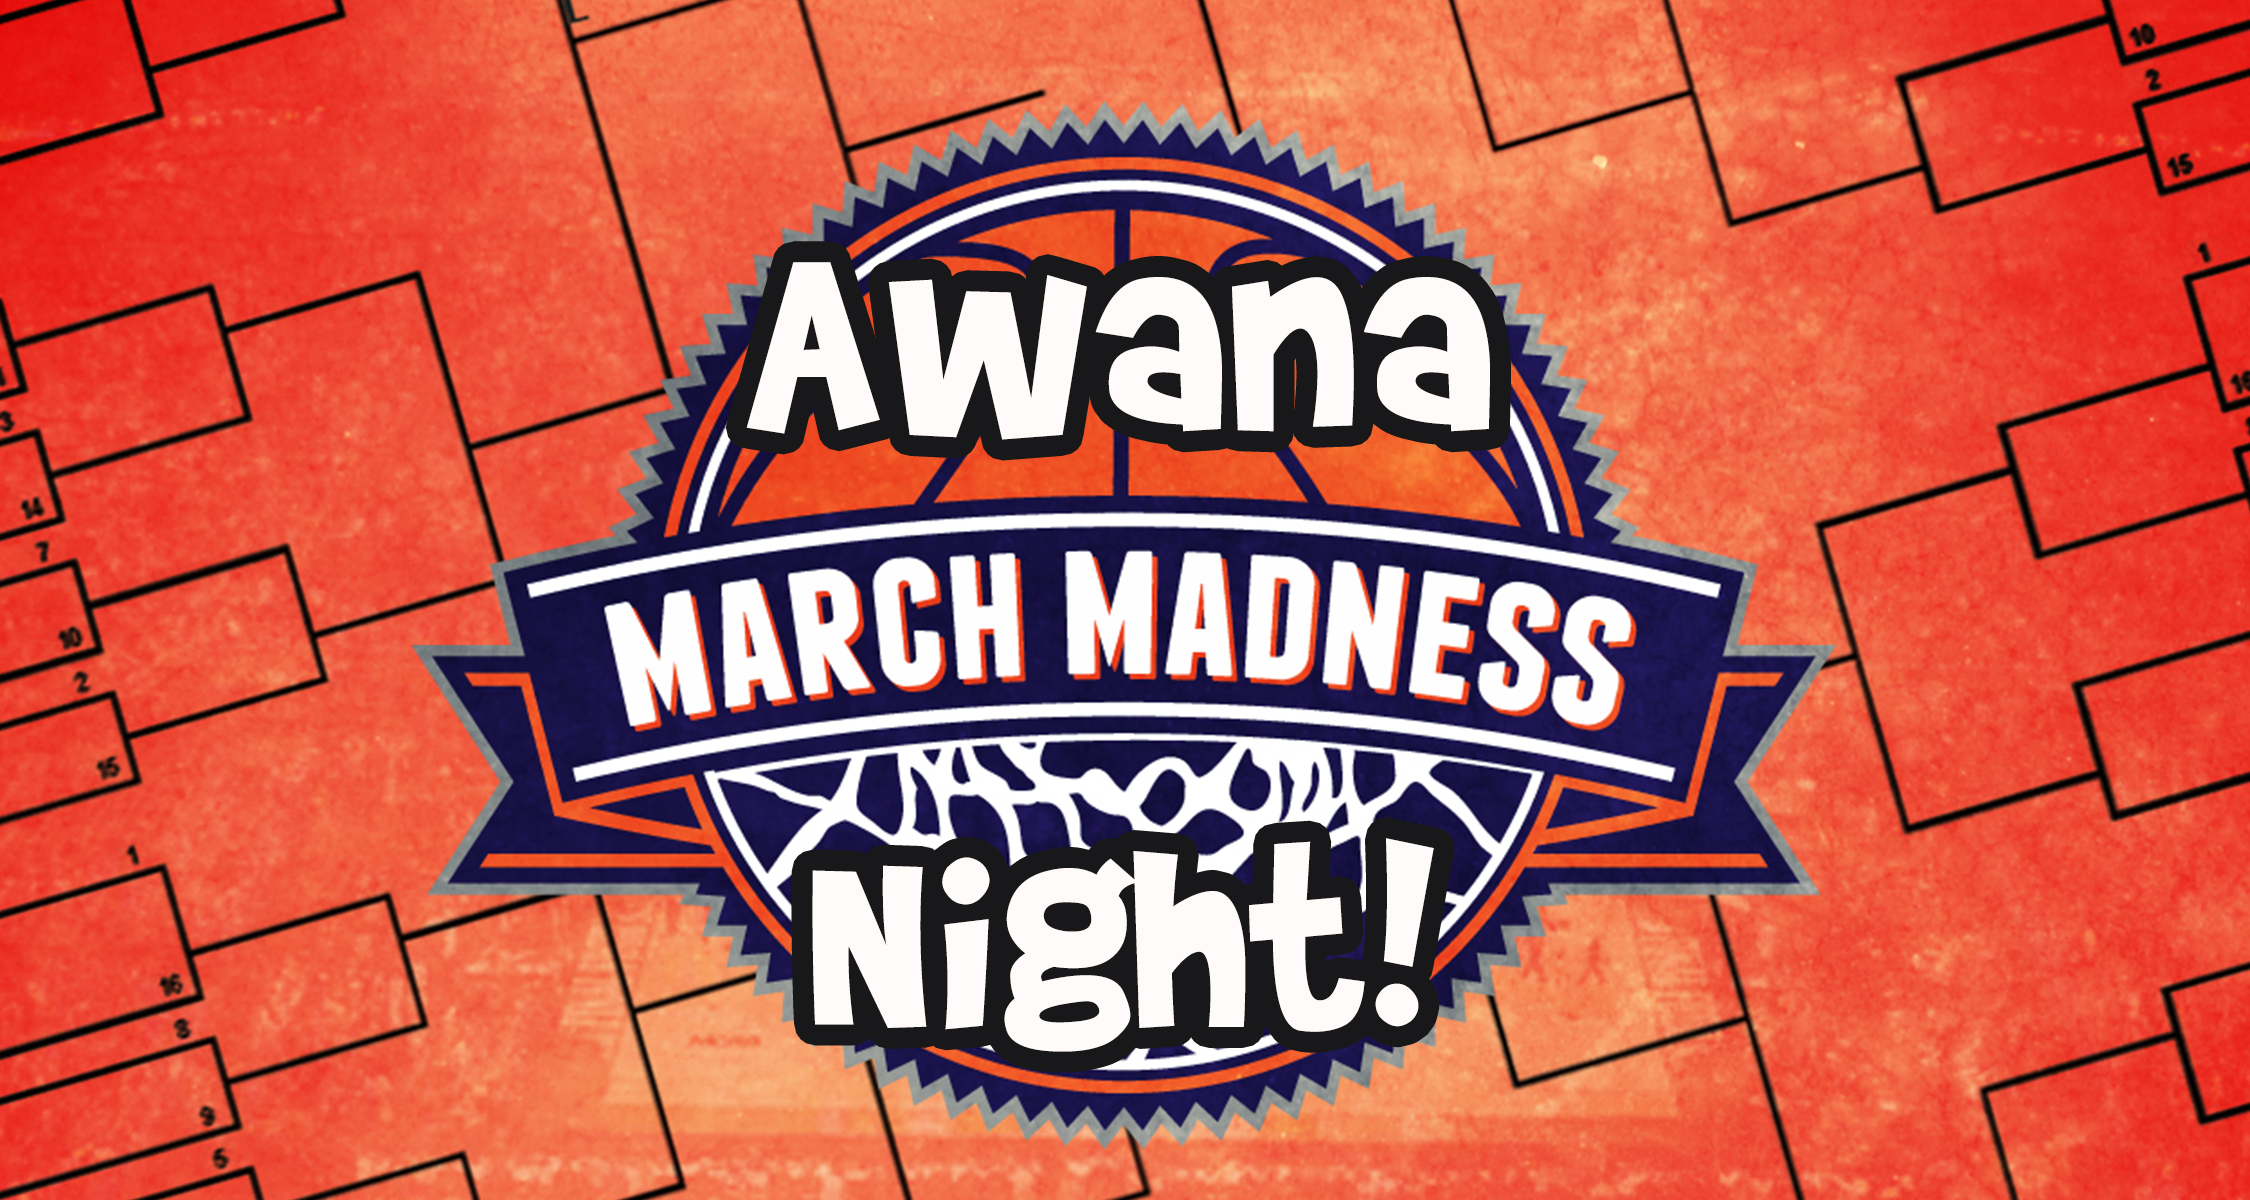 Awana March Madness Night image